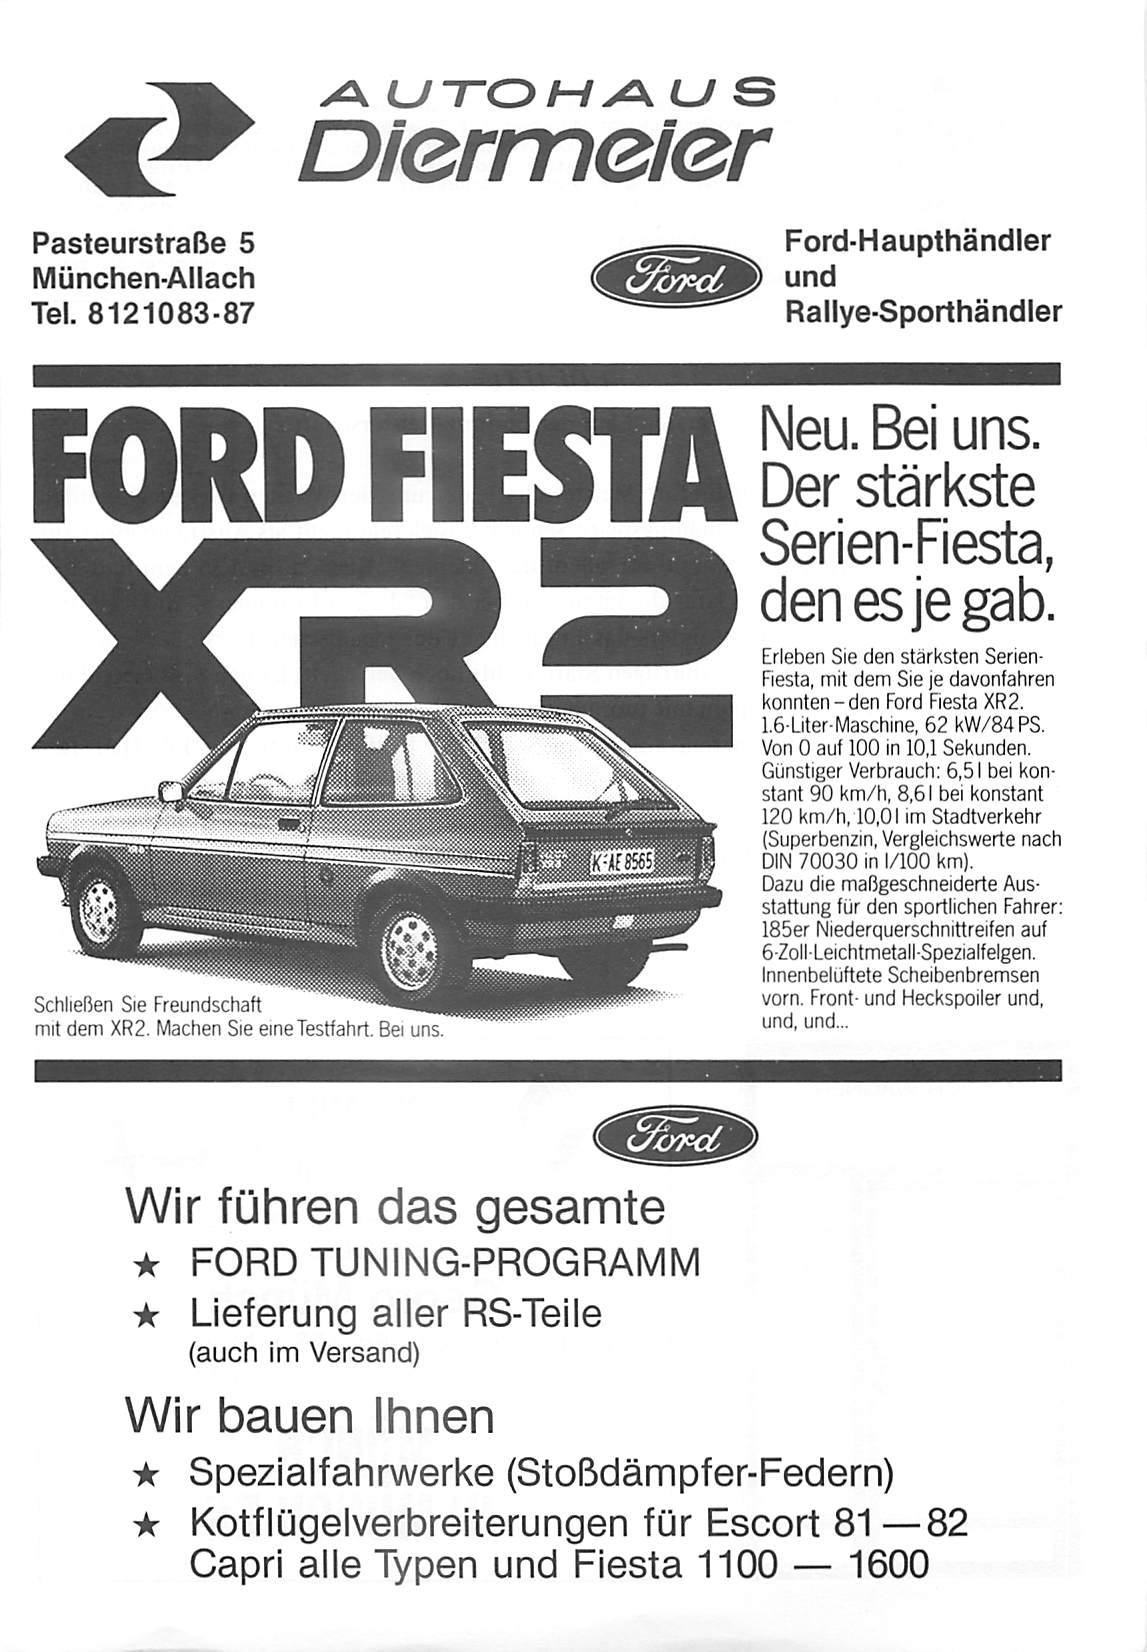 Diermeier Pasteurstraße 5 München-Allach Tel. 8121083-87 Ford-Haupthändler und Rallye-Sporthändler FORD FIESTA Ä Serien-Fiesta, den es je gab. Schließen Sie Freundschaft mit dem XR2.